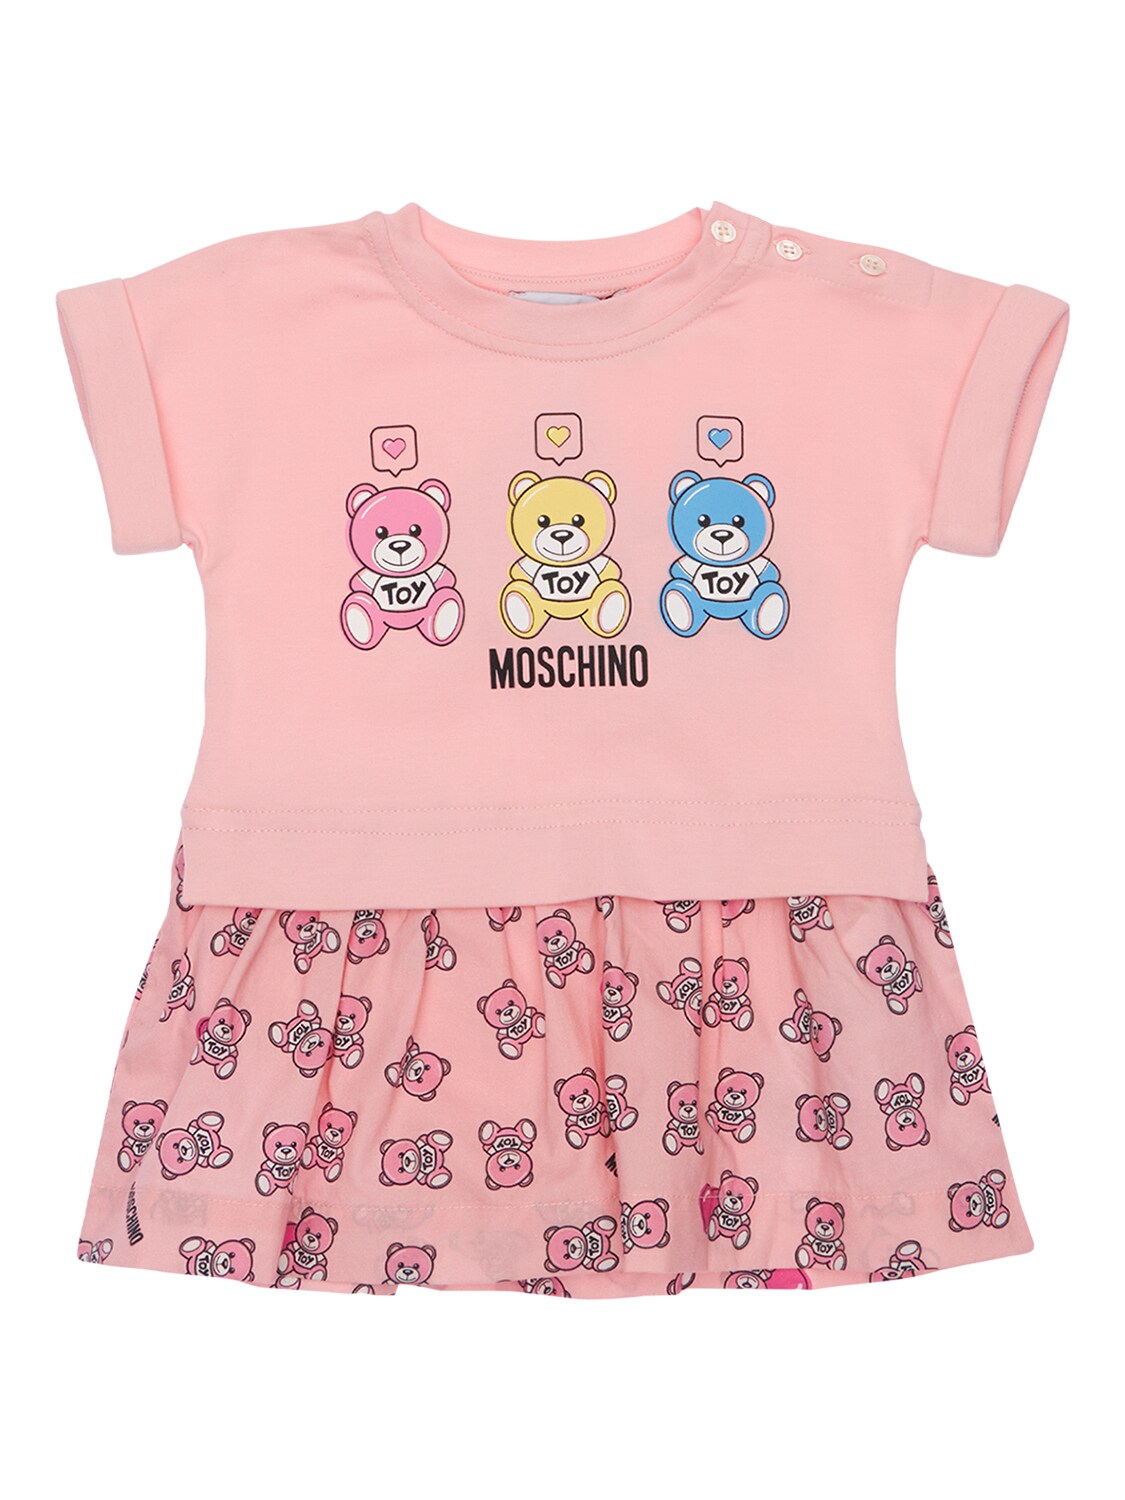 Moschino Babies' 配短裙棉质平纹针织连体衣 In Pink